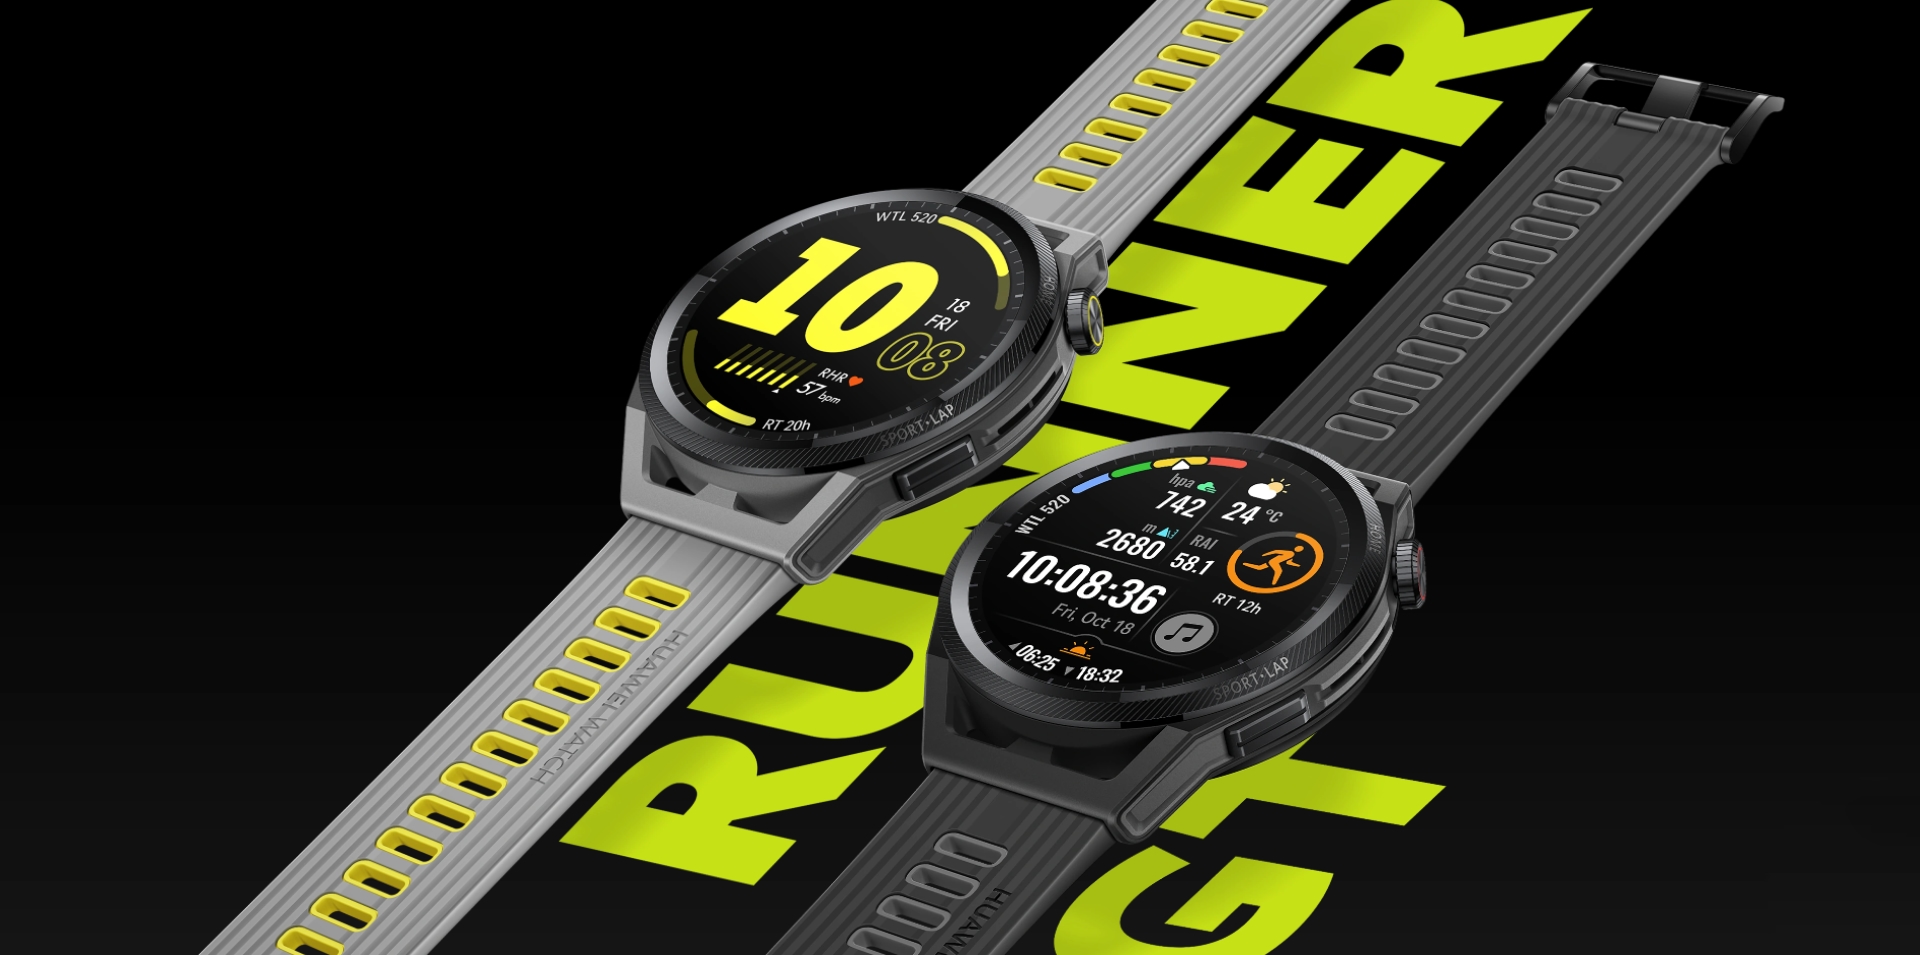 Huawei Watch GT Runner debuta en el mercado internacional: un reloj inteligente para runners por 299 euros, también con simpáticas bonificaciones